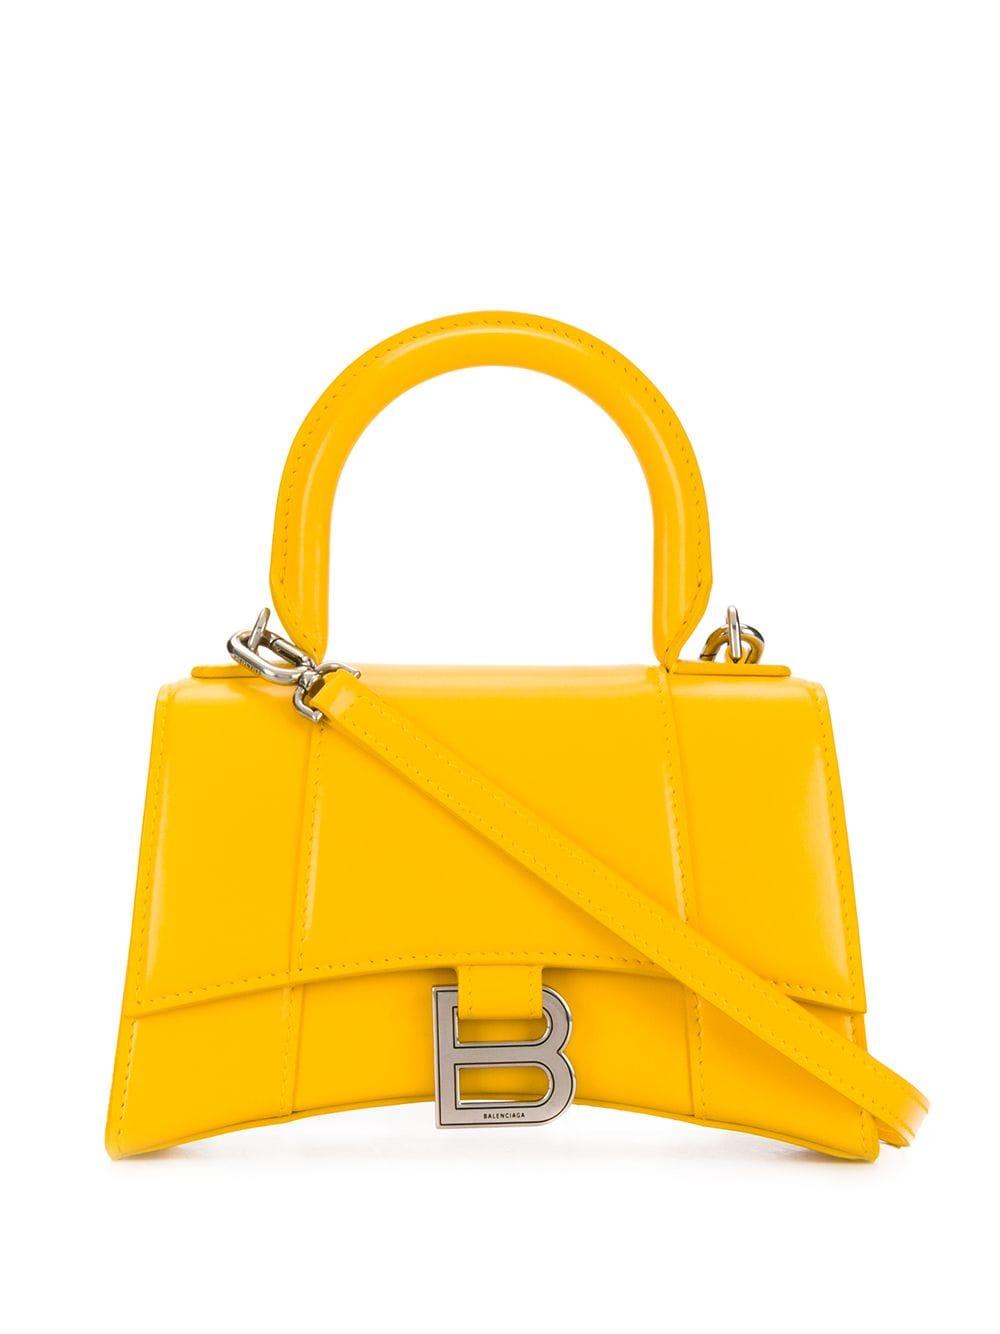 Balenciaga Hourglass Xs Mini Bag in Yellow | Lyst